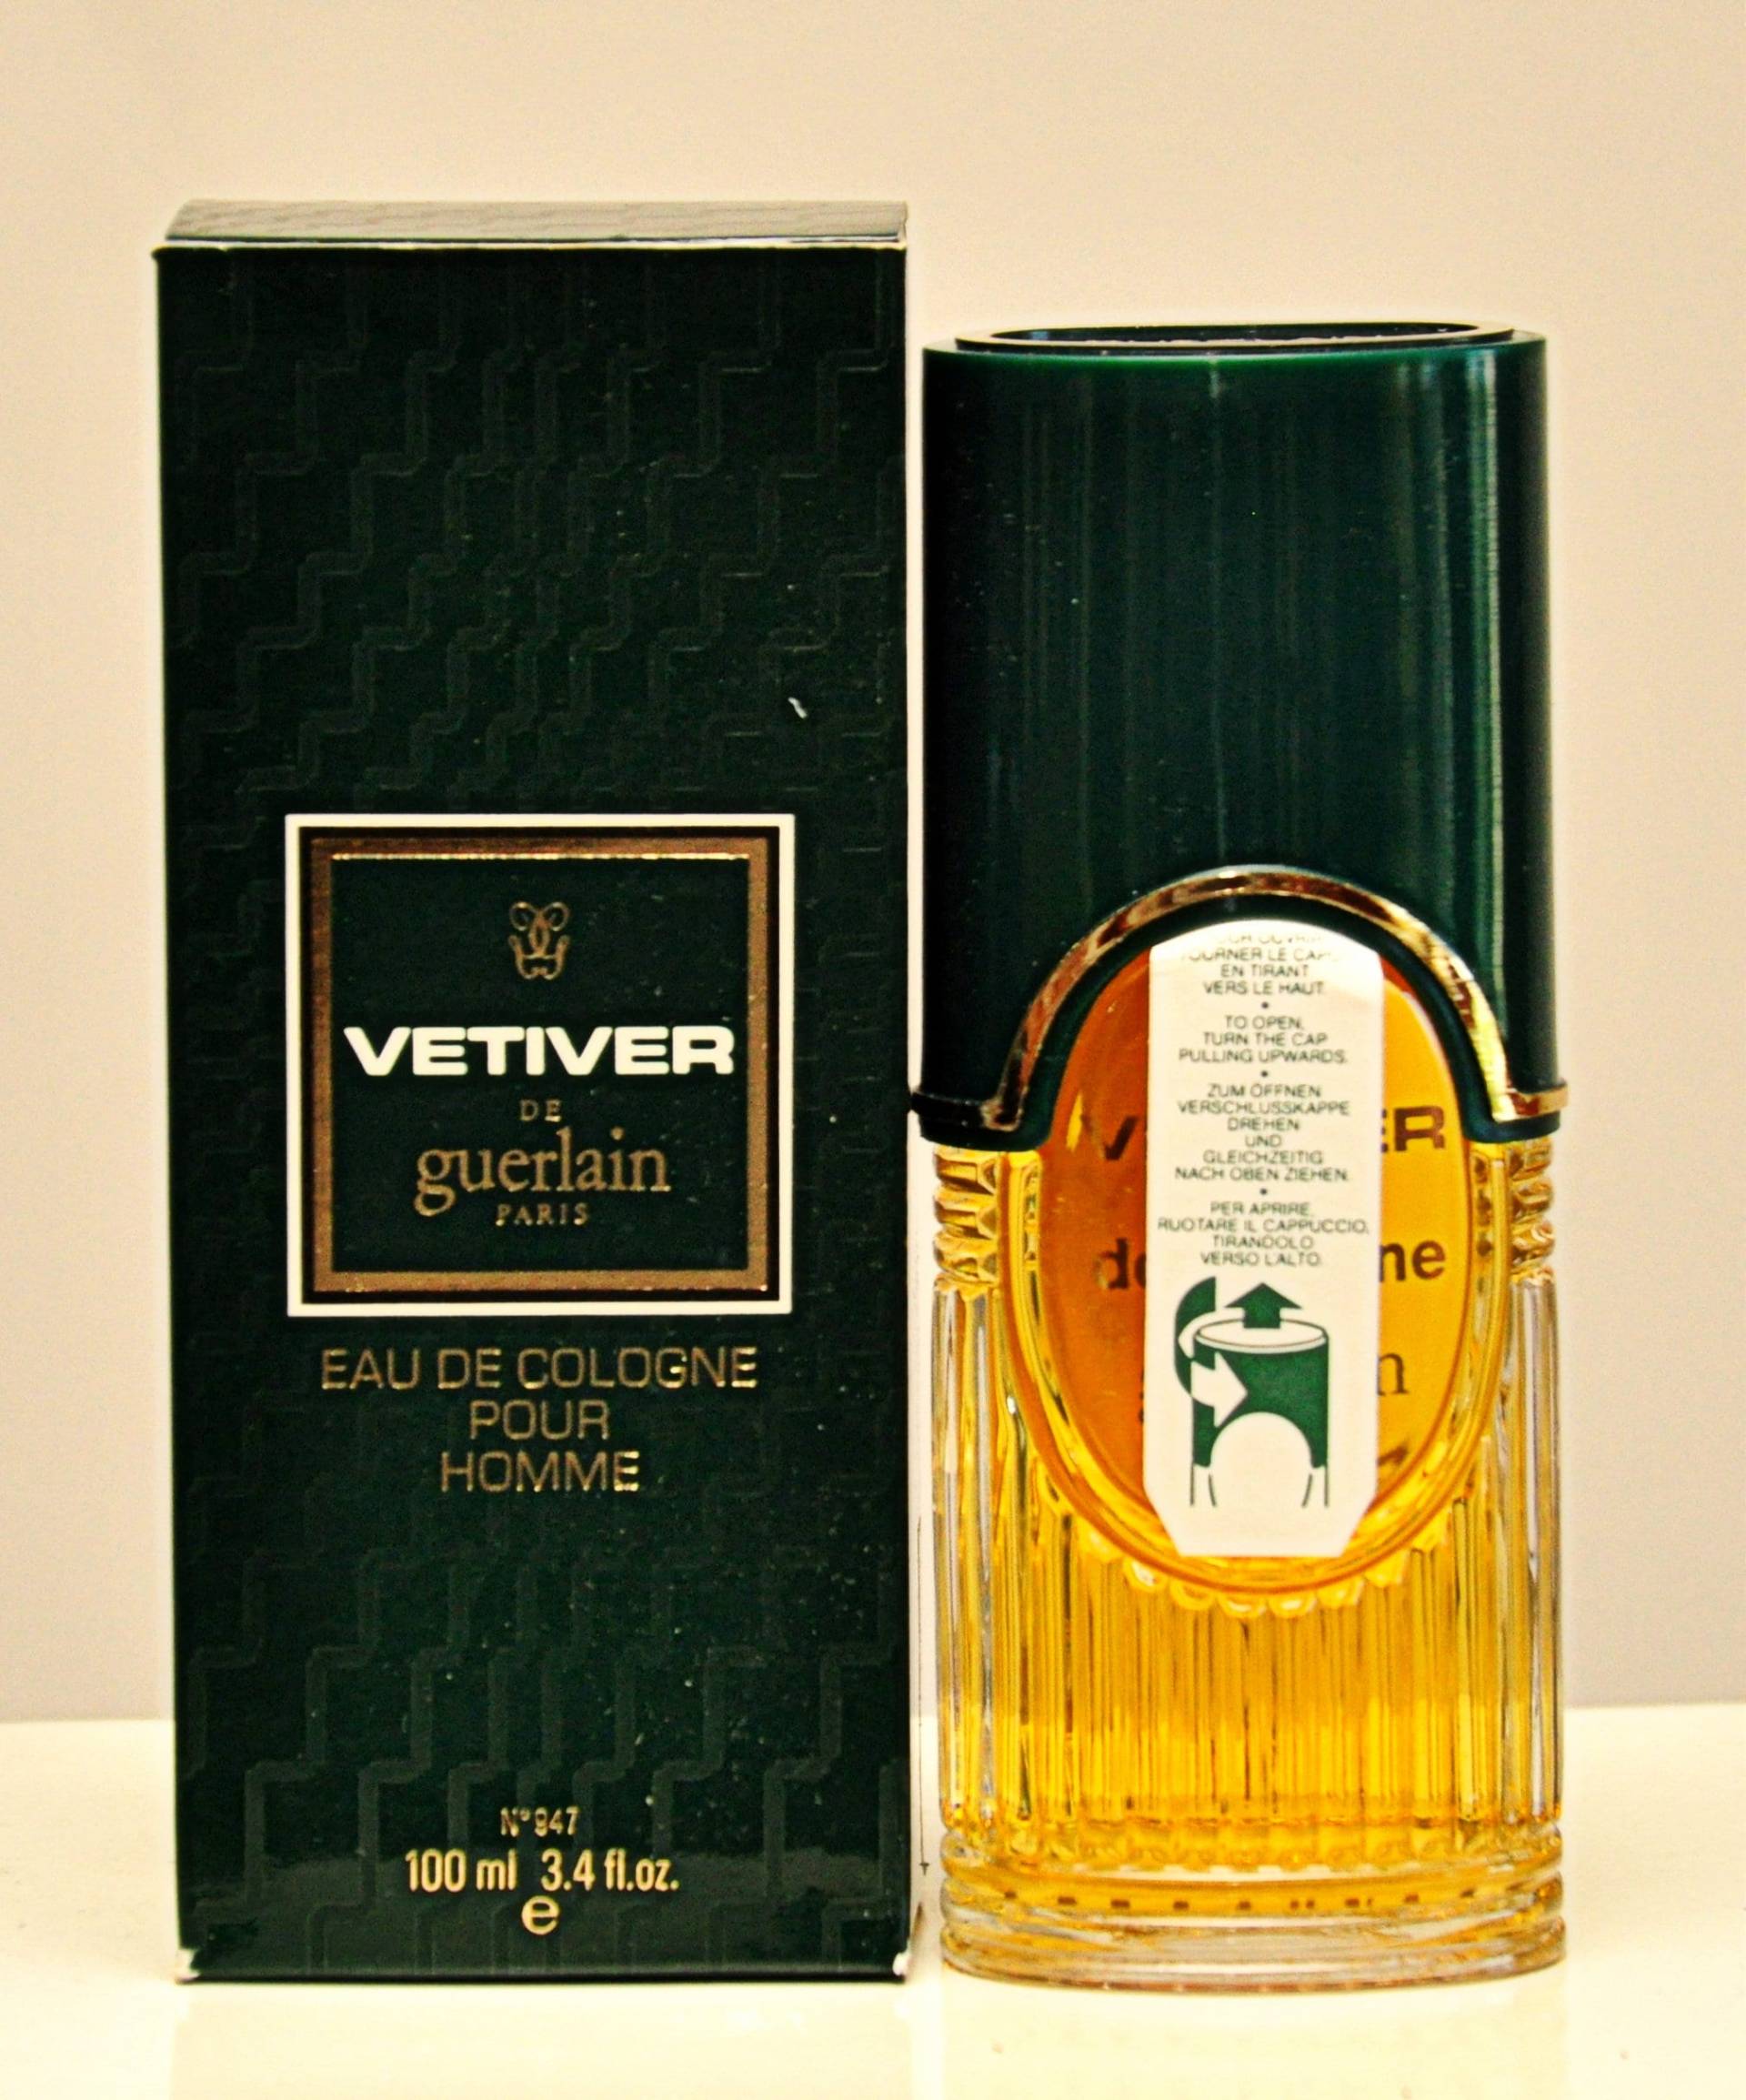 Guerlain Vetiver De Eau Cologne Pour Homme Eoc 100Ml Splash Non Spray Perfume Man Very Rare Vintage 1959 Version 1984 von YourVintagePerfume